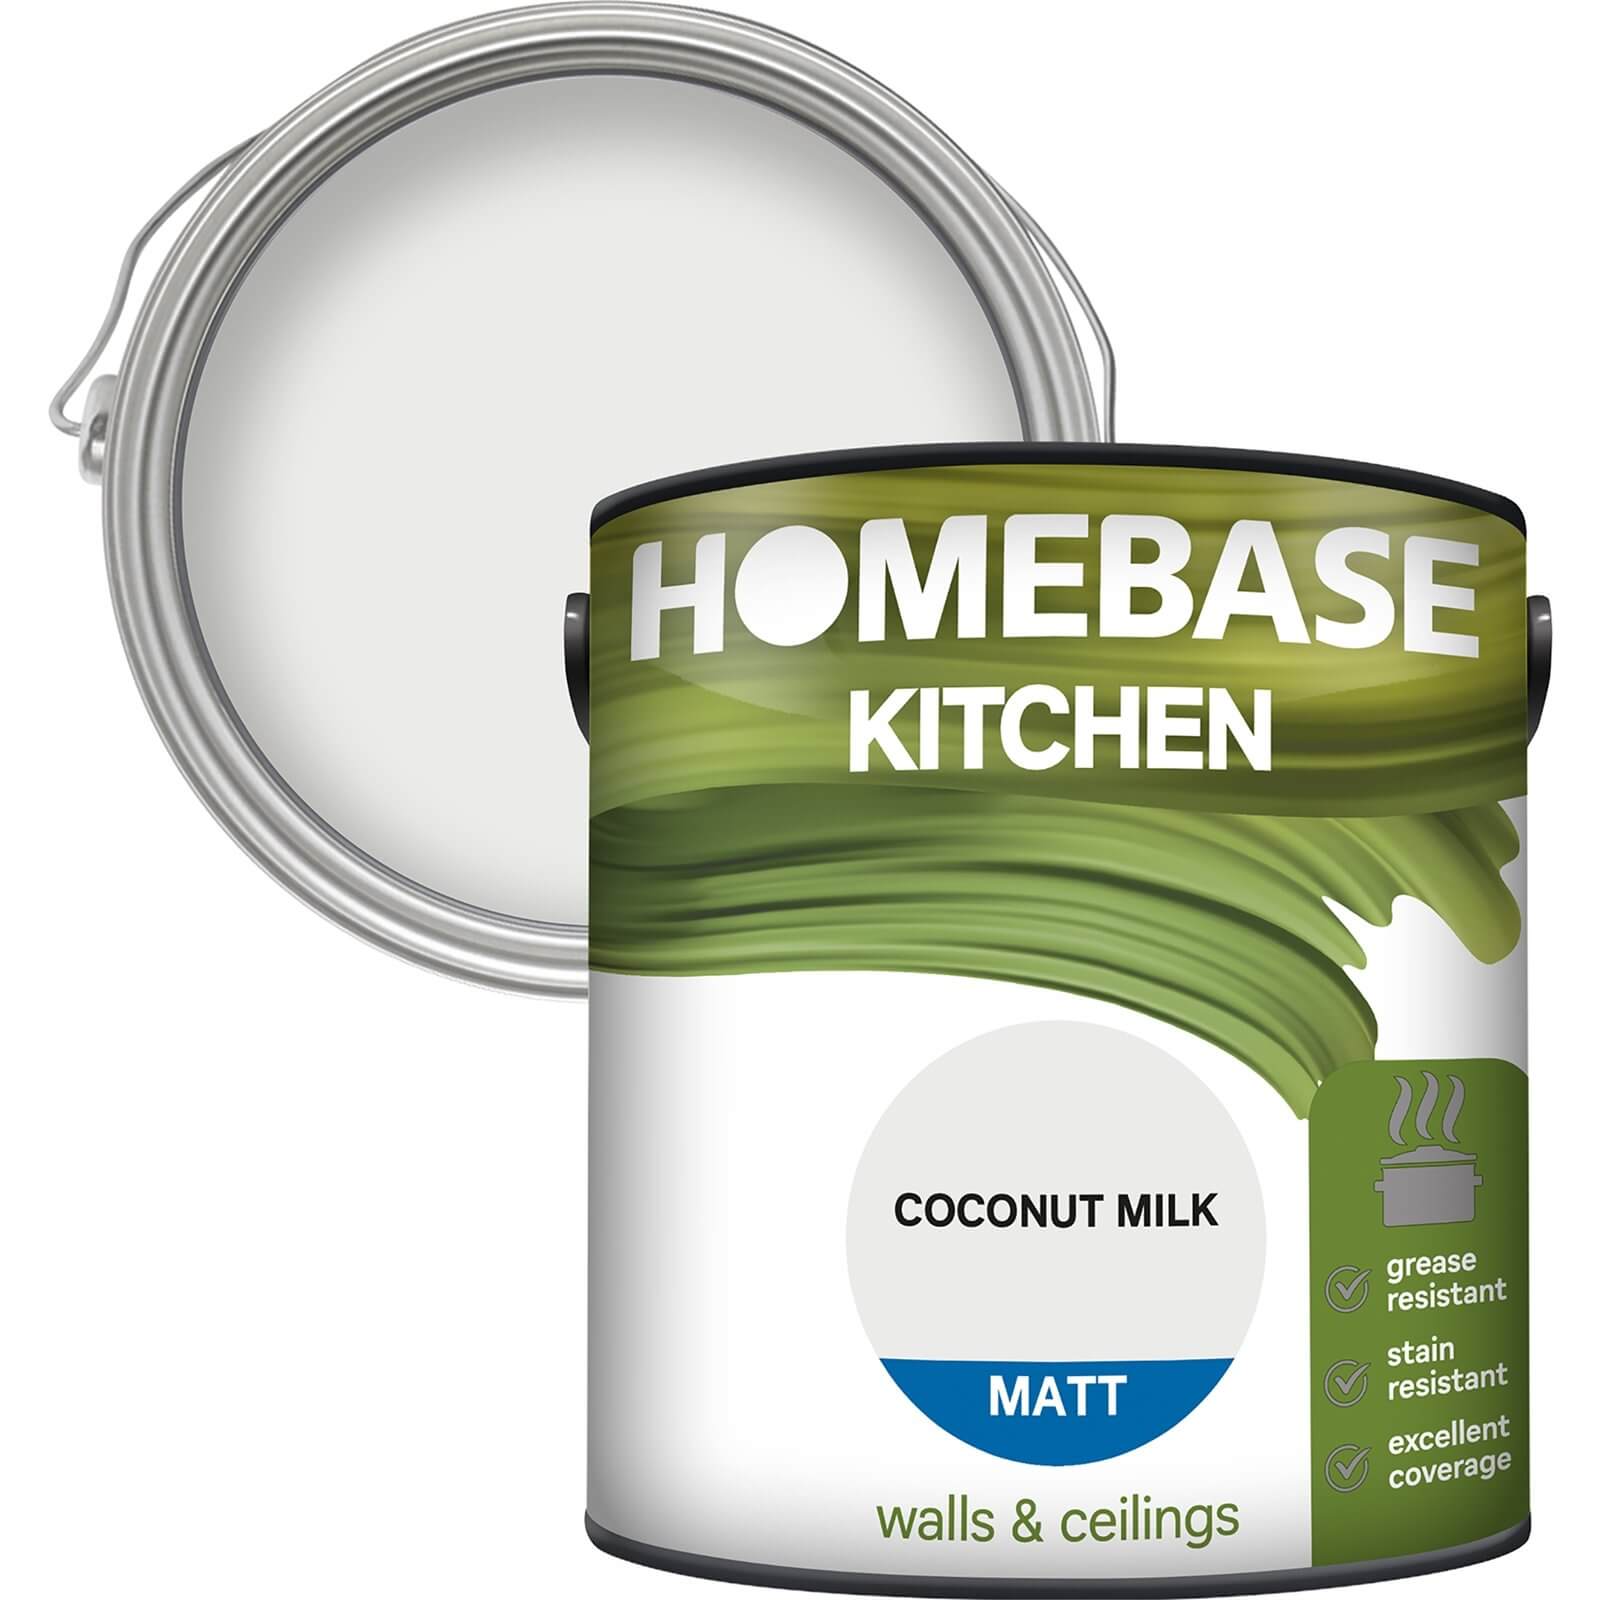 Homebase Kitchen Matt Paint - Coconut Milk 2.5L